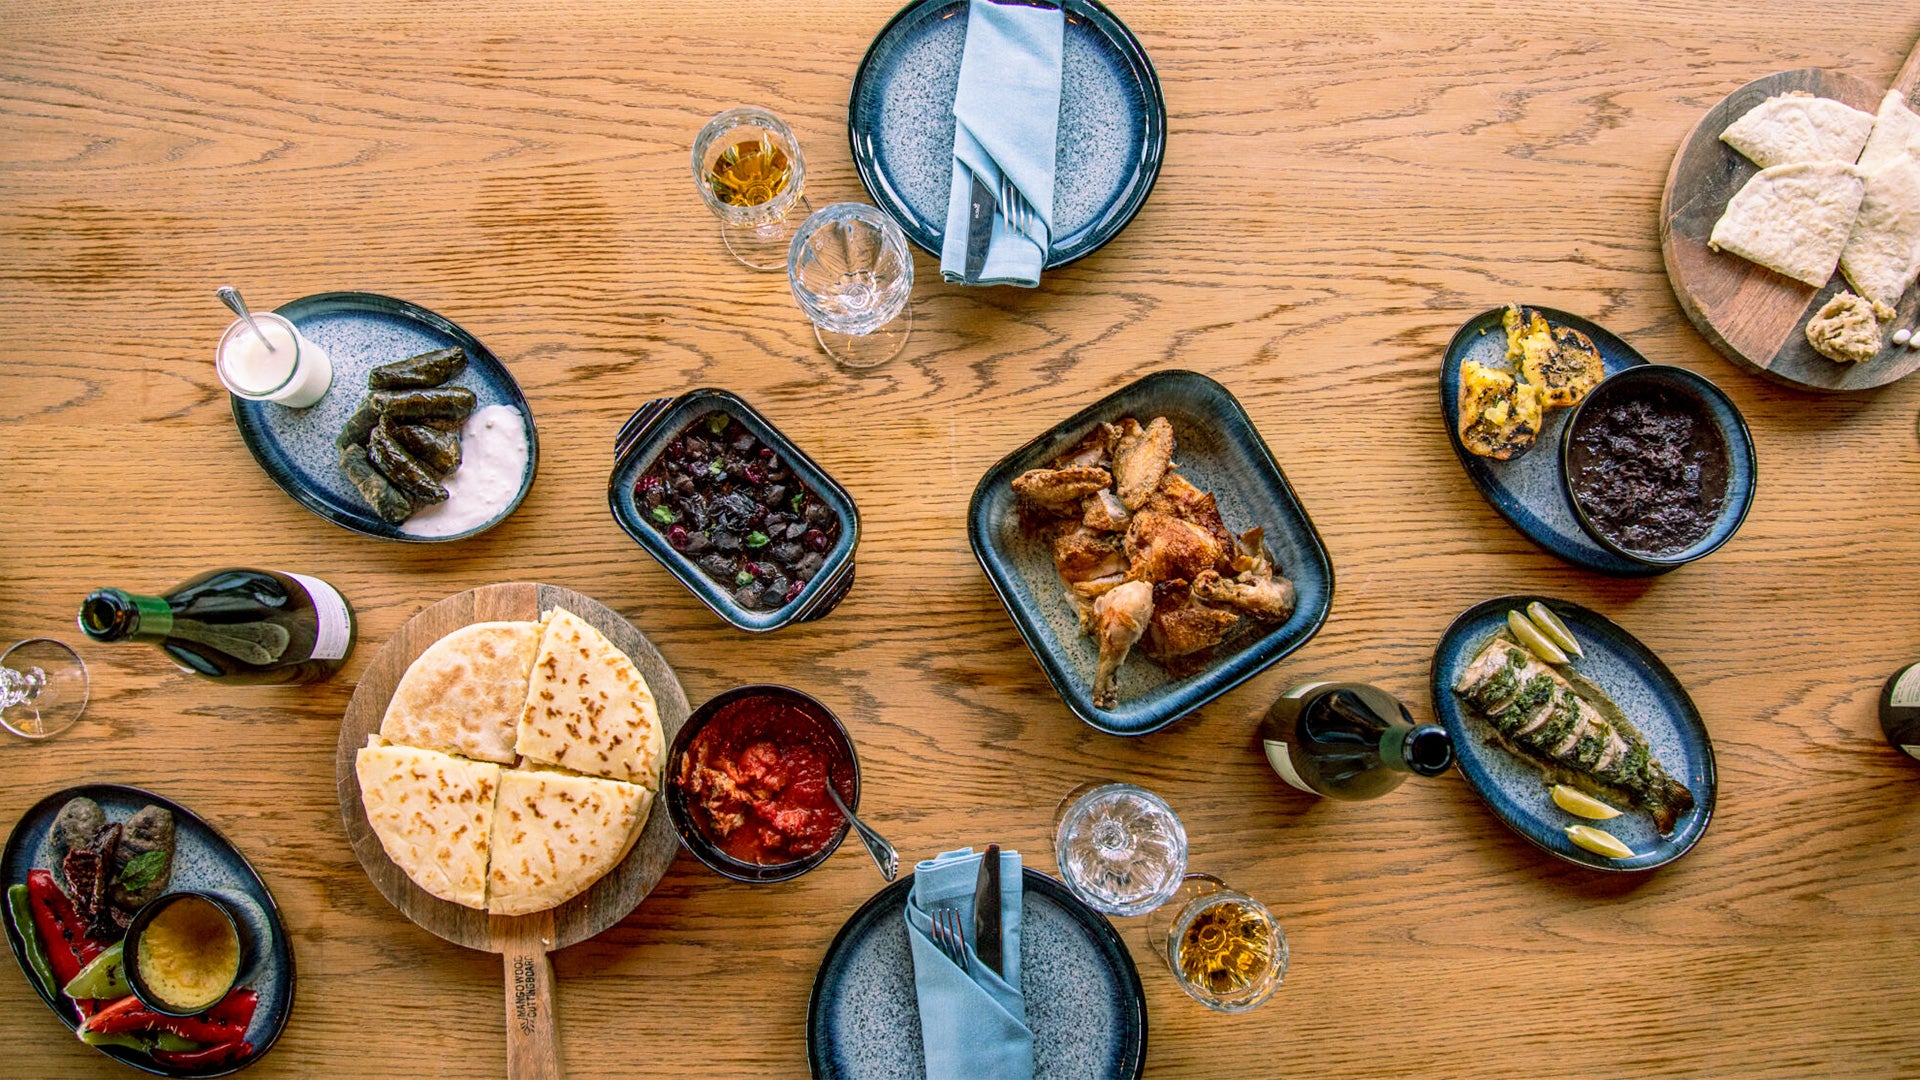 Vazisubani Food and Wine on Table